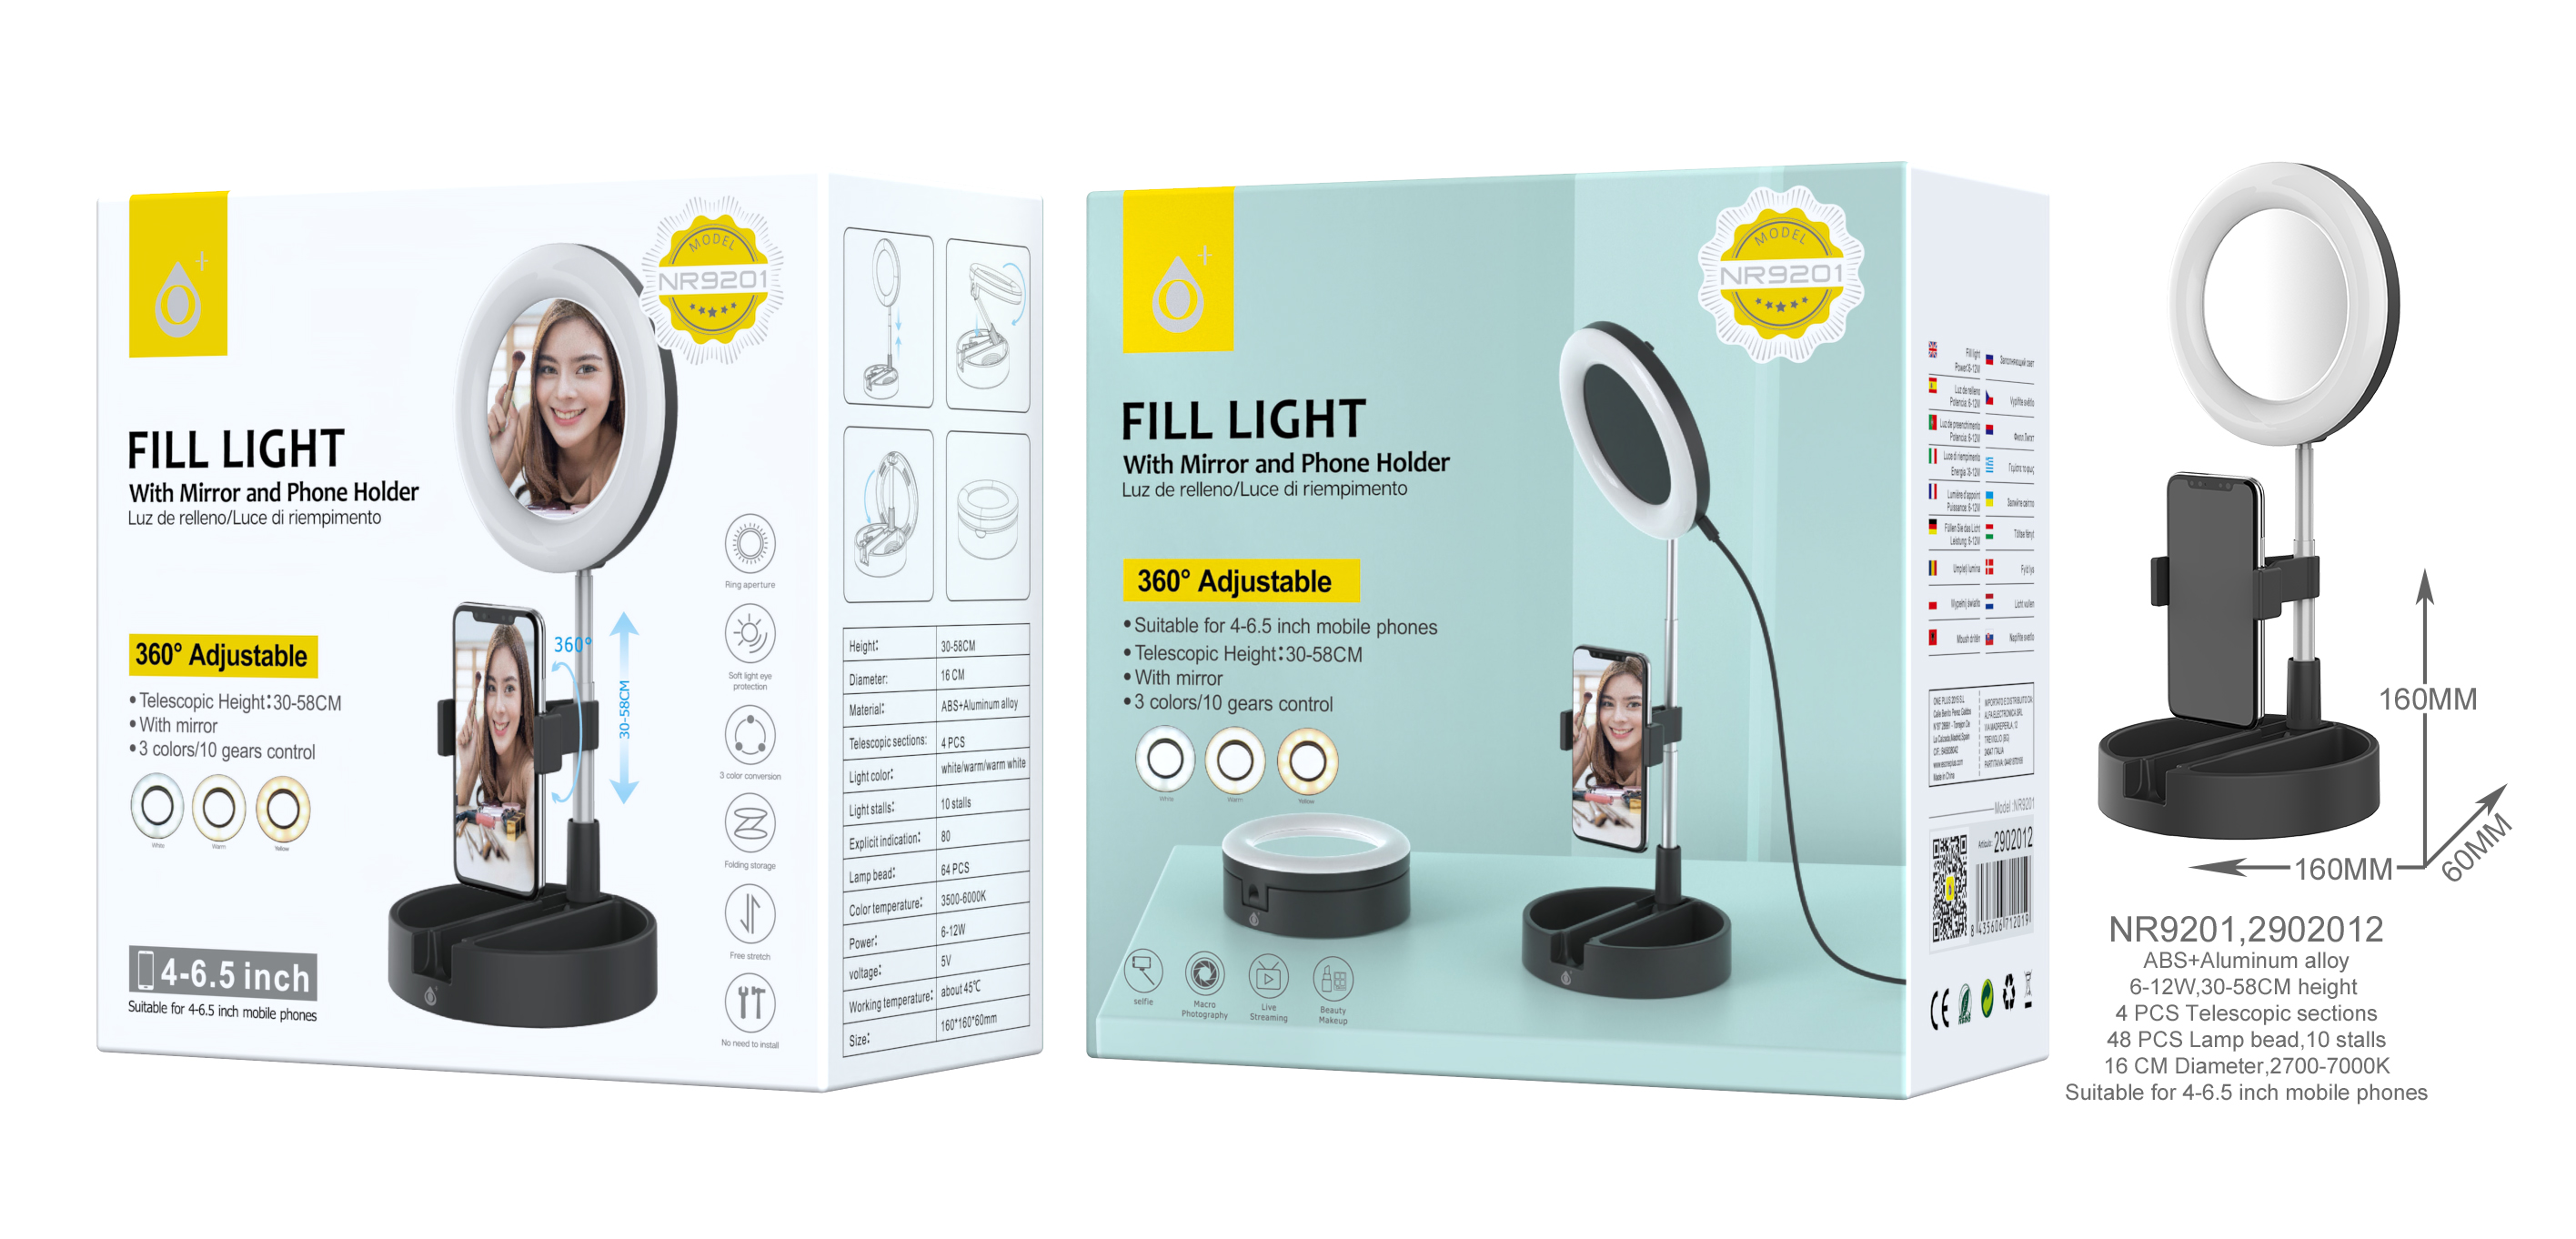 Anillo Luz LED 9cm con Soporte de Manguera de Brazo Flexible para